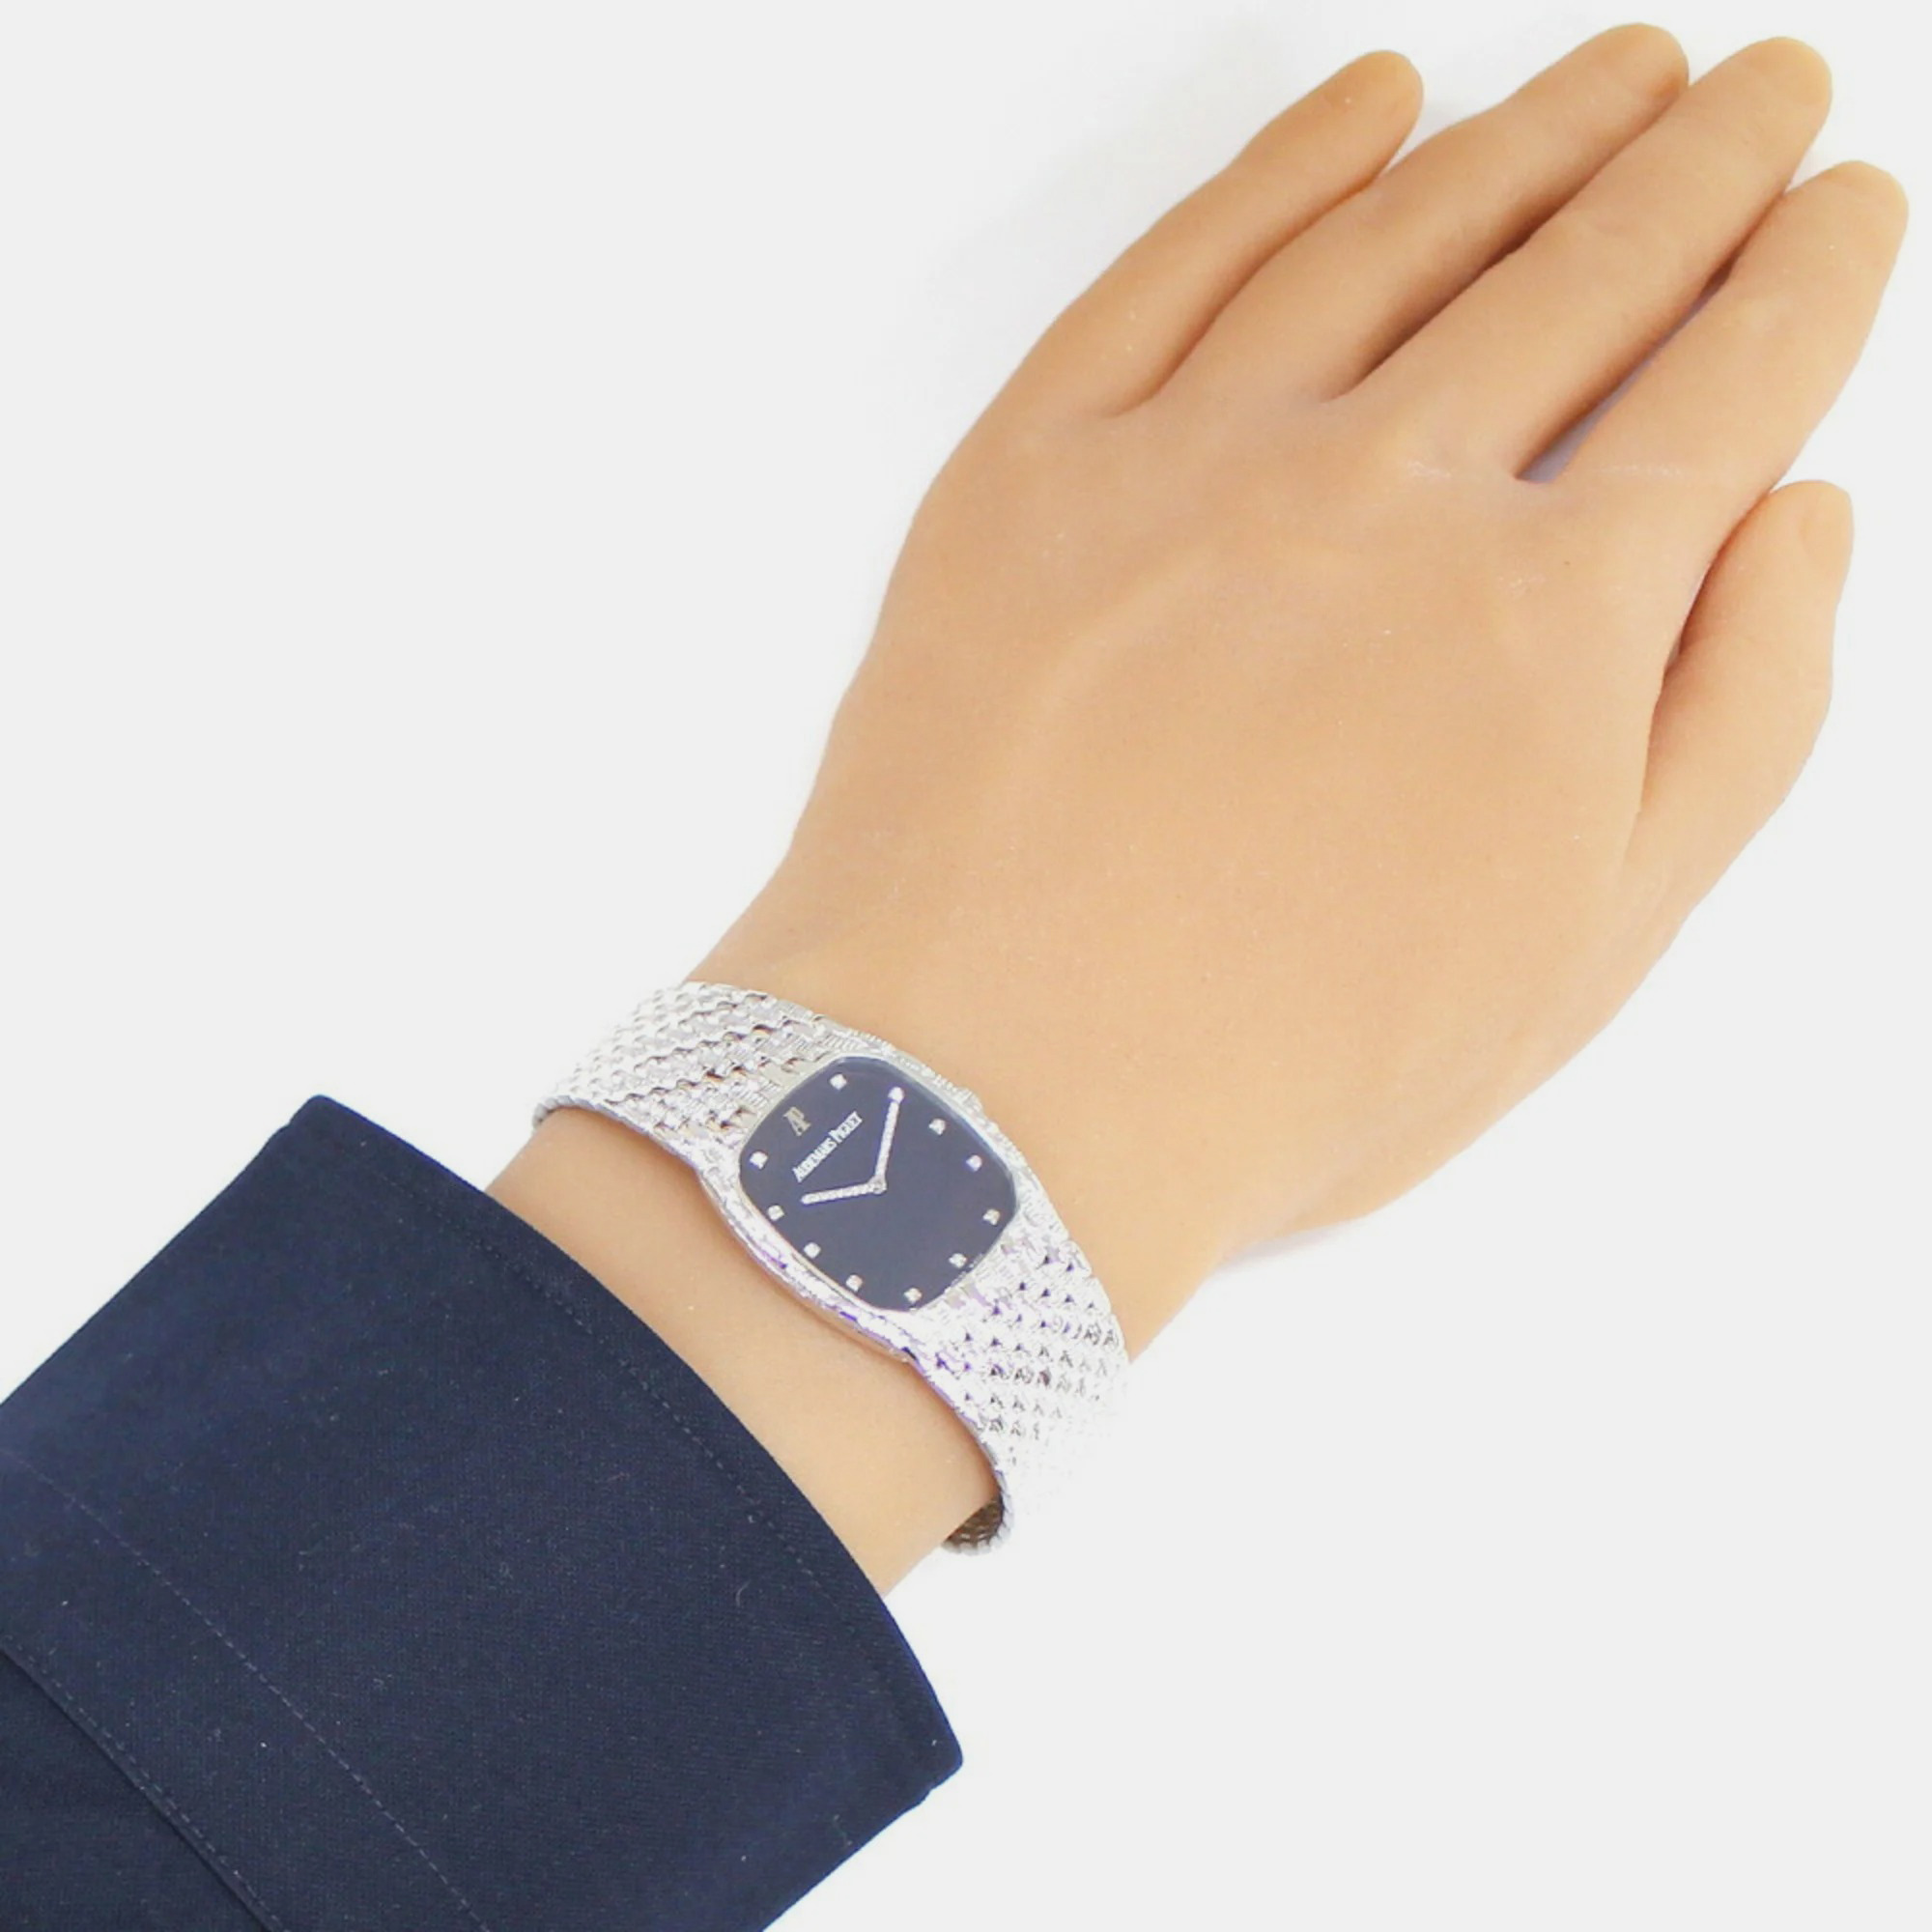 Audemars Piguet Black 18k White Gold Cobra Manual Winding Women's Wristwatch 26.5 Mm